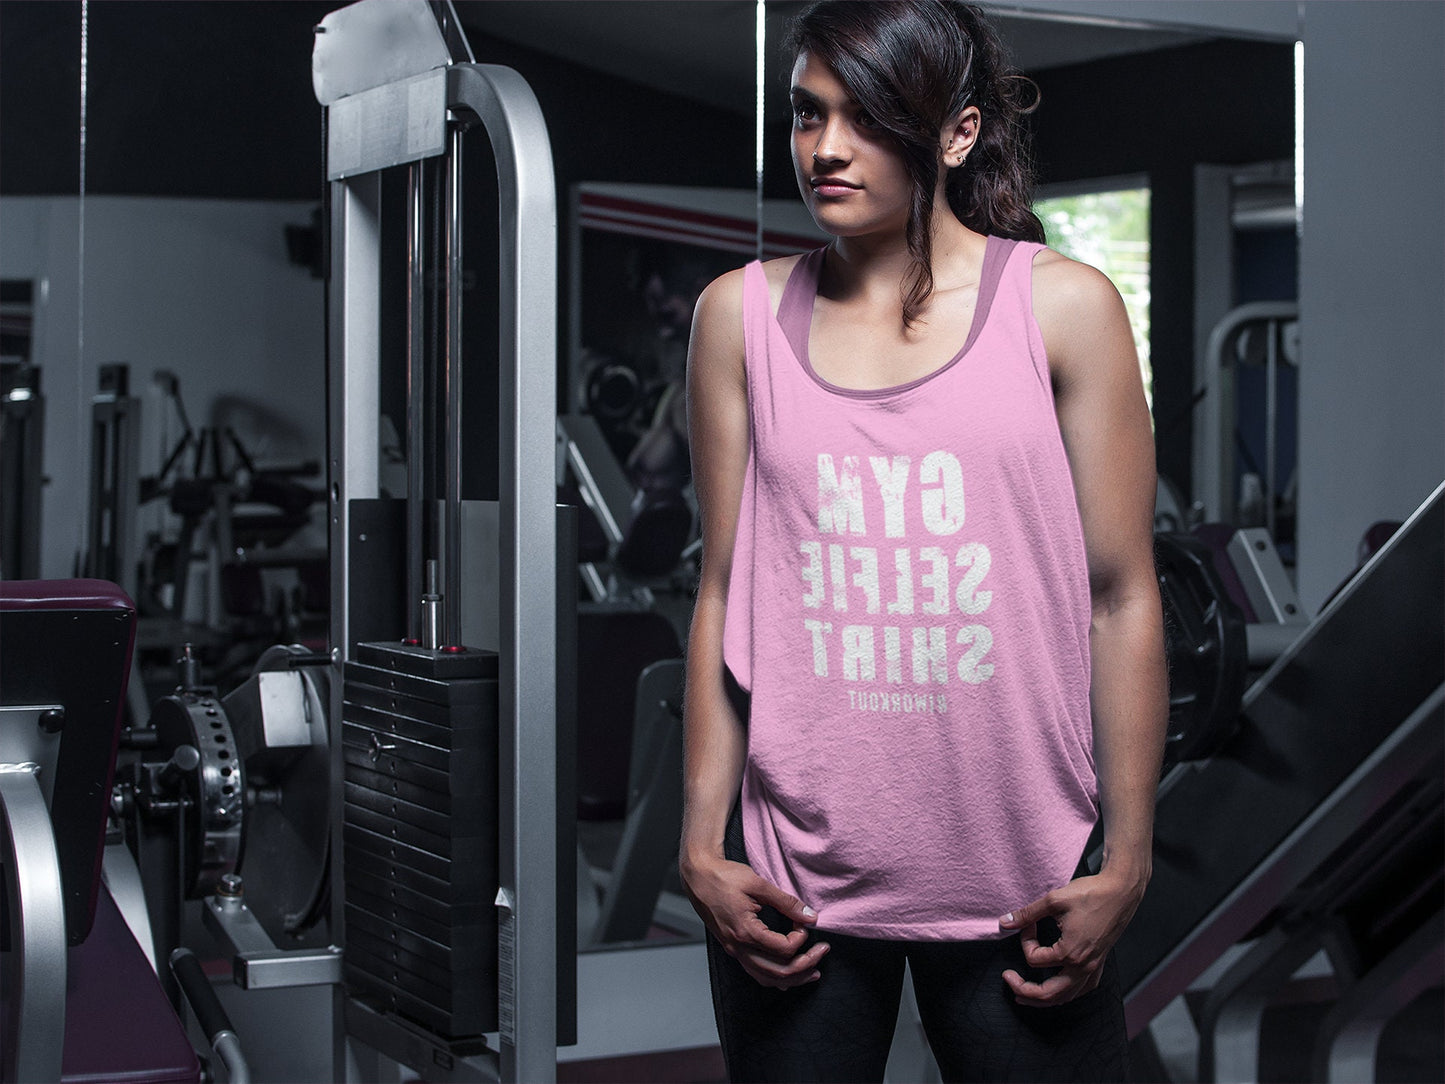 GYM SELFIE SHIRT - Womens workout tank top